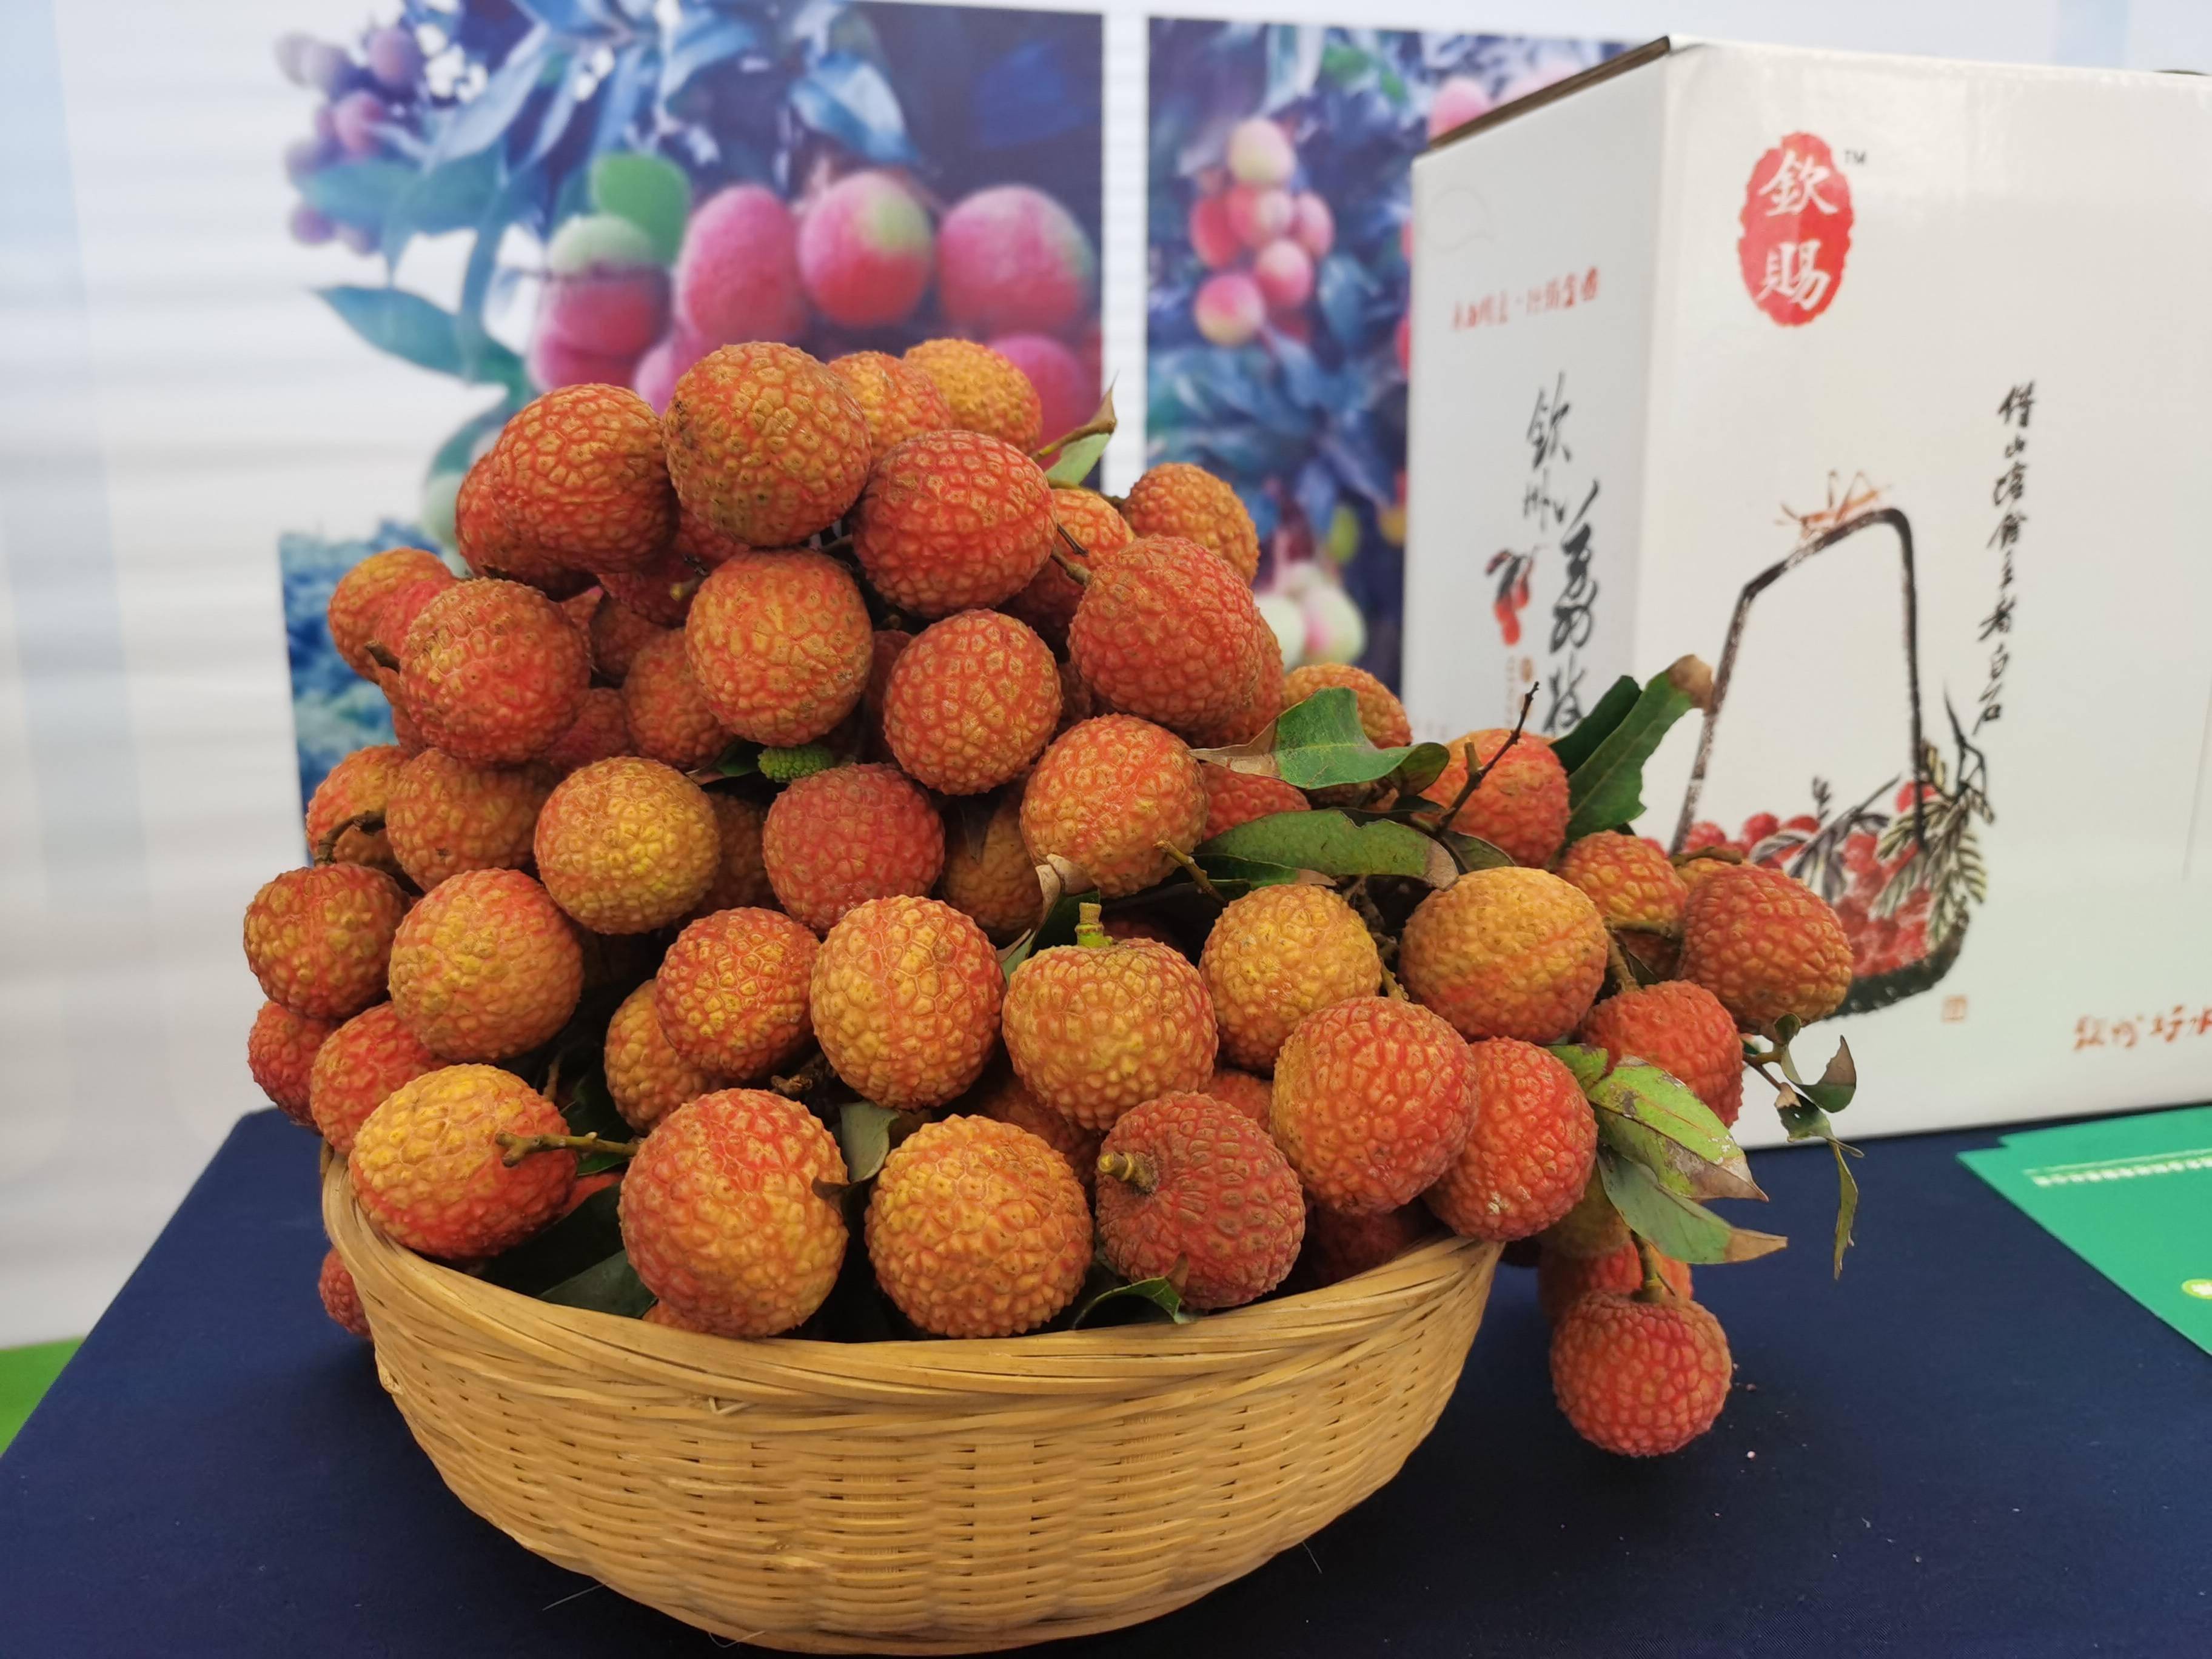 打造荔枝品牌,广西钦州将举办灵山荔枝节